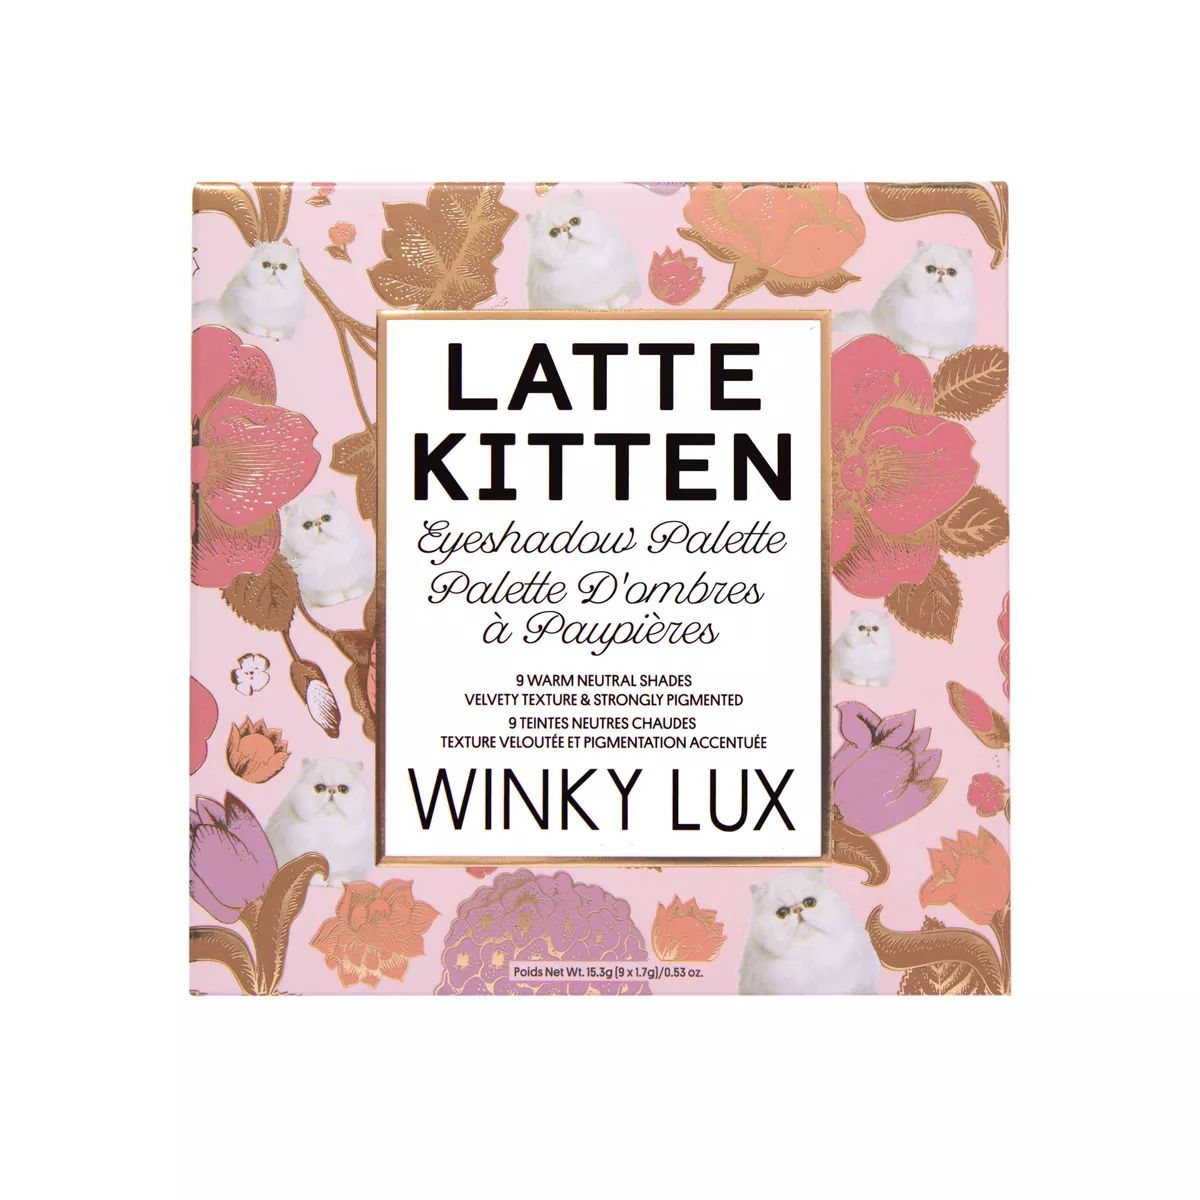 Winky Lux Kitten Eyeshadow Palette - 0.53oz | Target